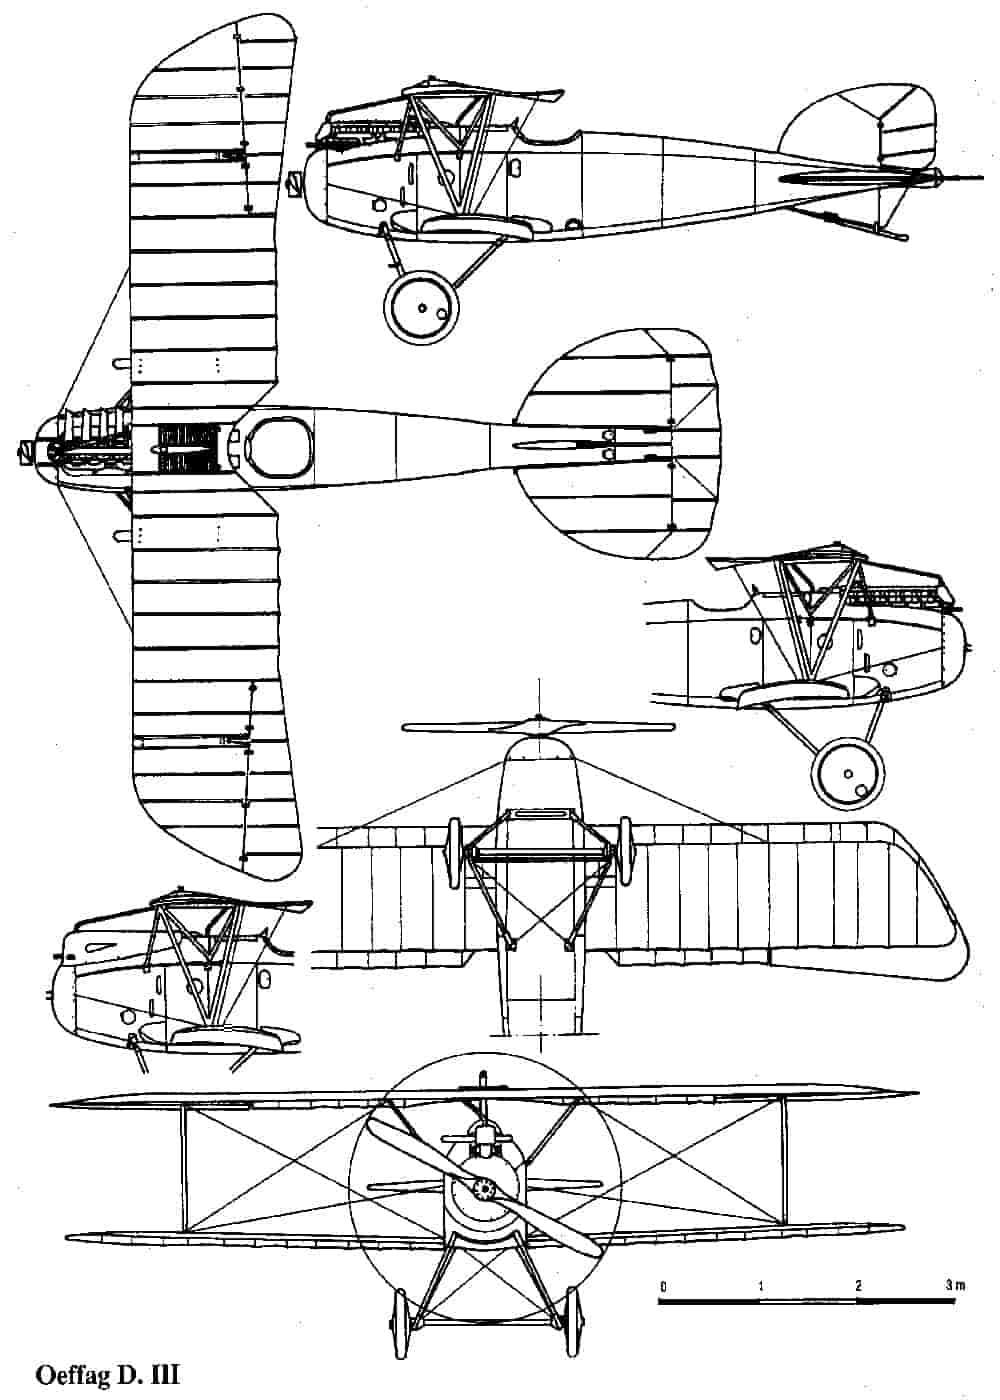 Общий вид истребителя Альбатрос D III